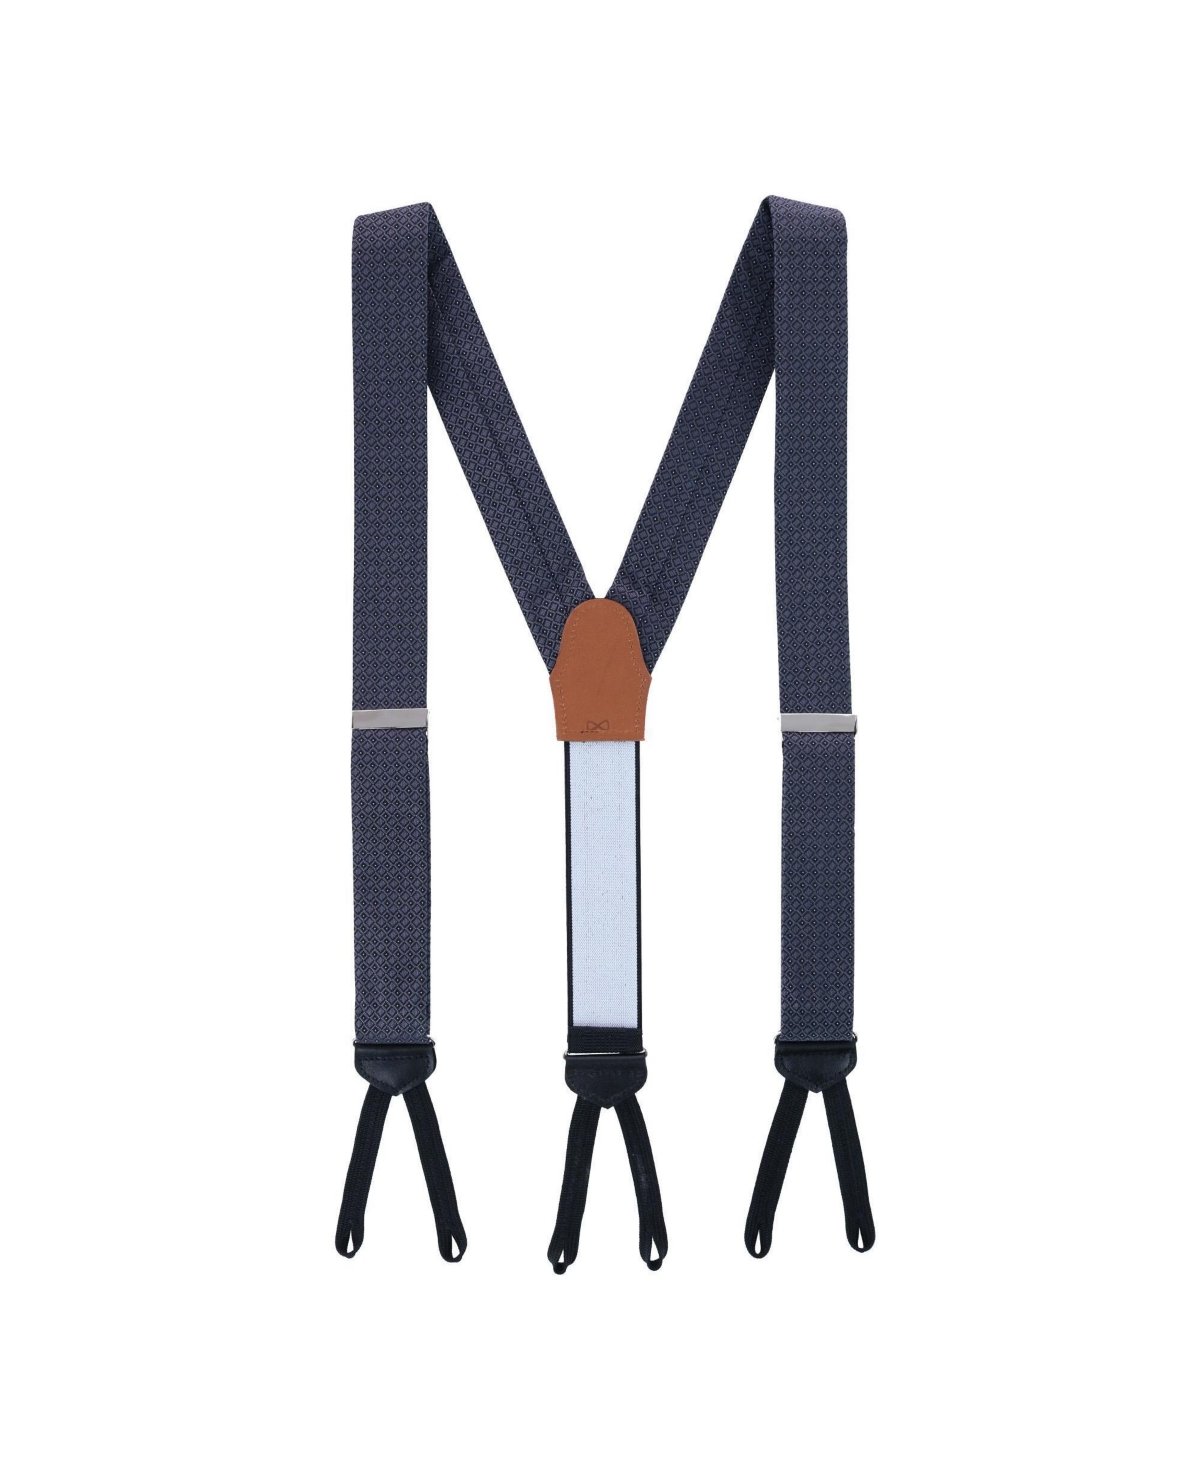 Trafalgar Pin Dot Formal End Suspenders | Smart Closet